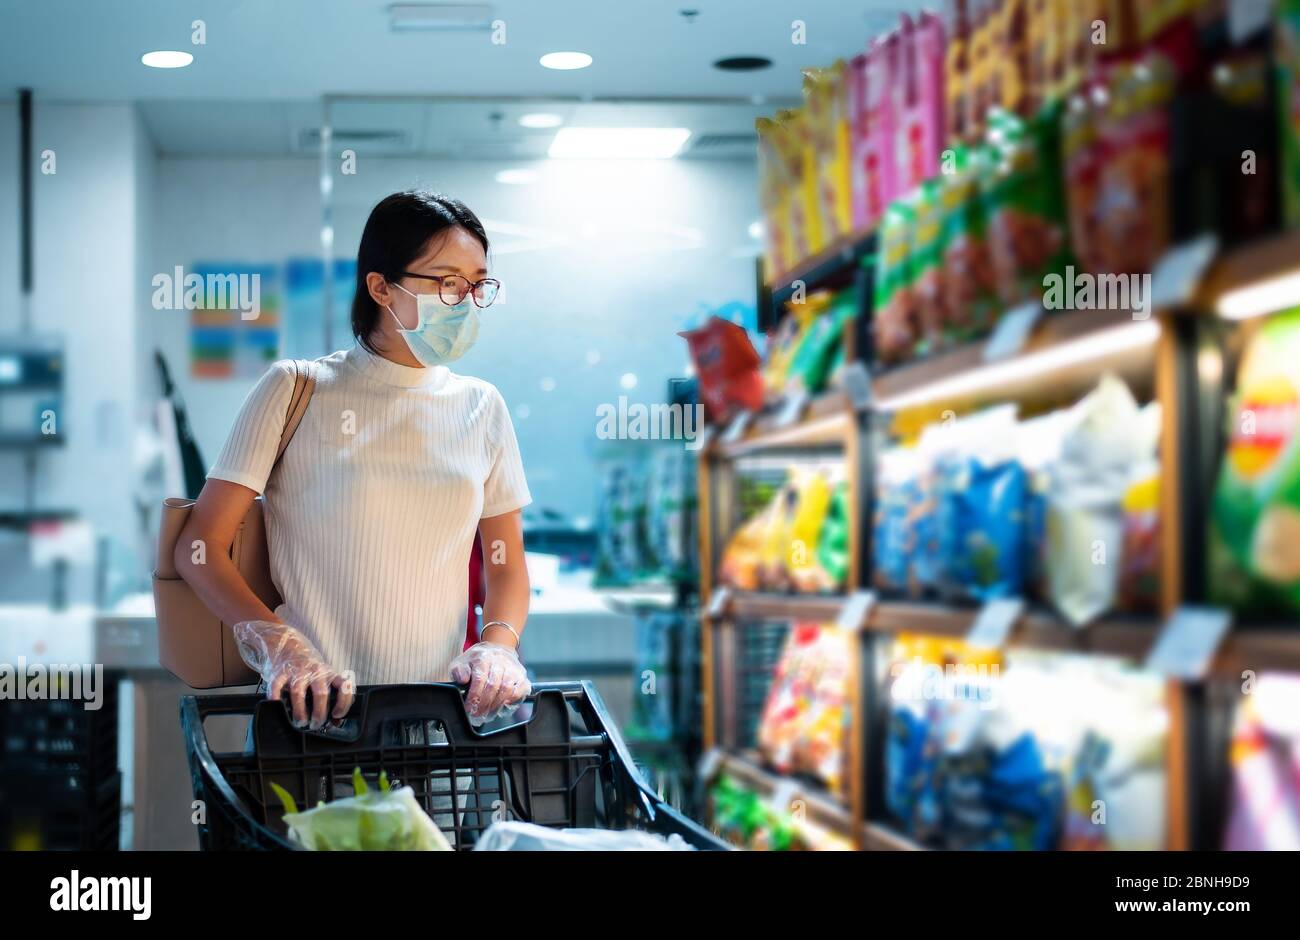 Femme asiatique qui fait ses courses sur le marché, portant un masque et des gants pour prévenir la propagation du virius pendant la pandémie du coronavirus Banque D'Images